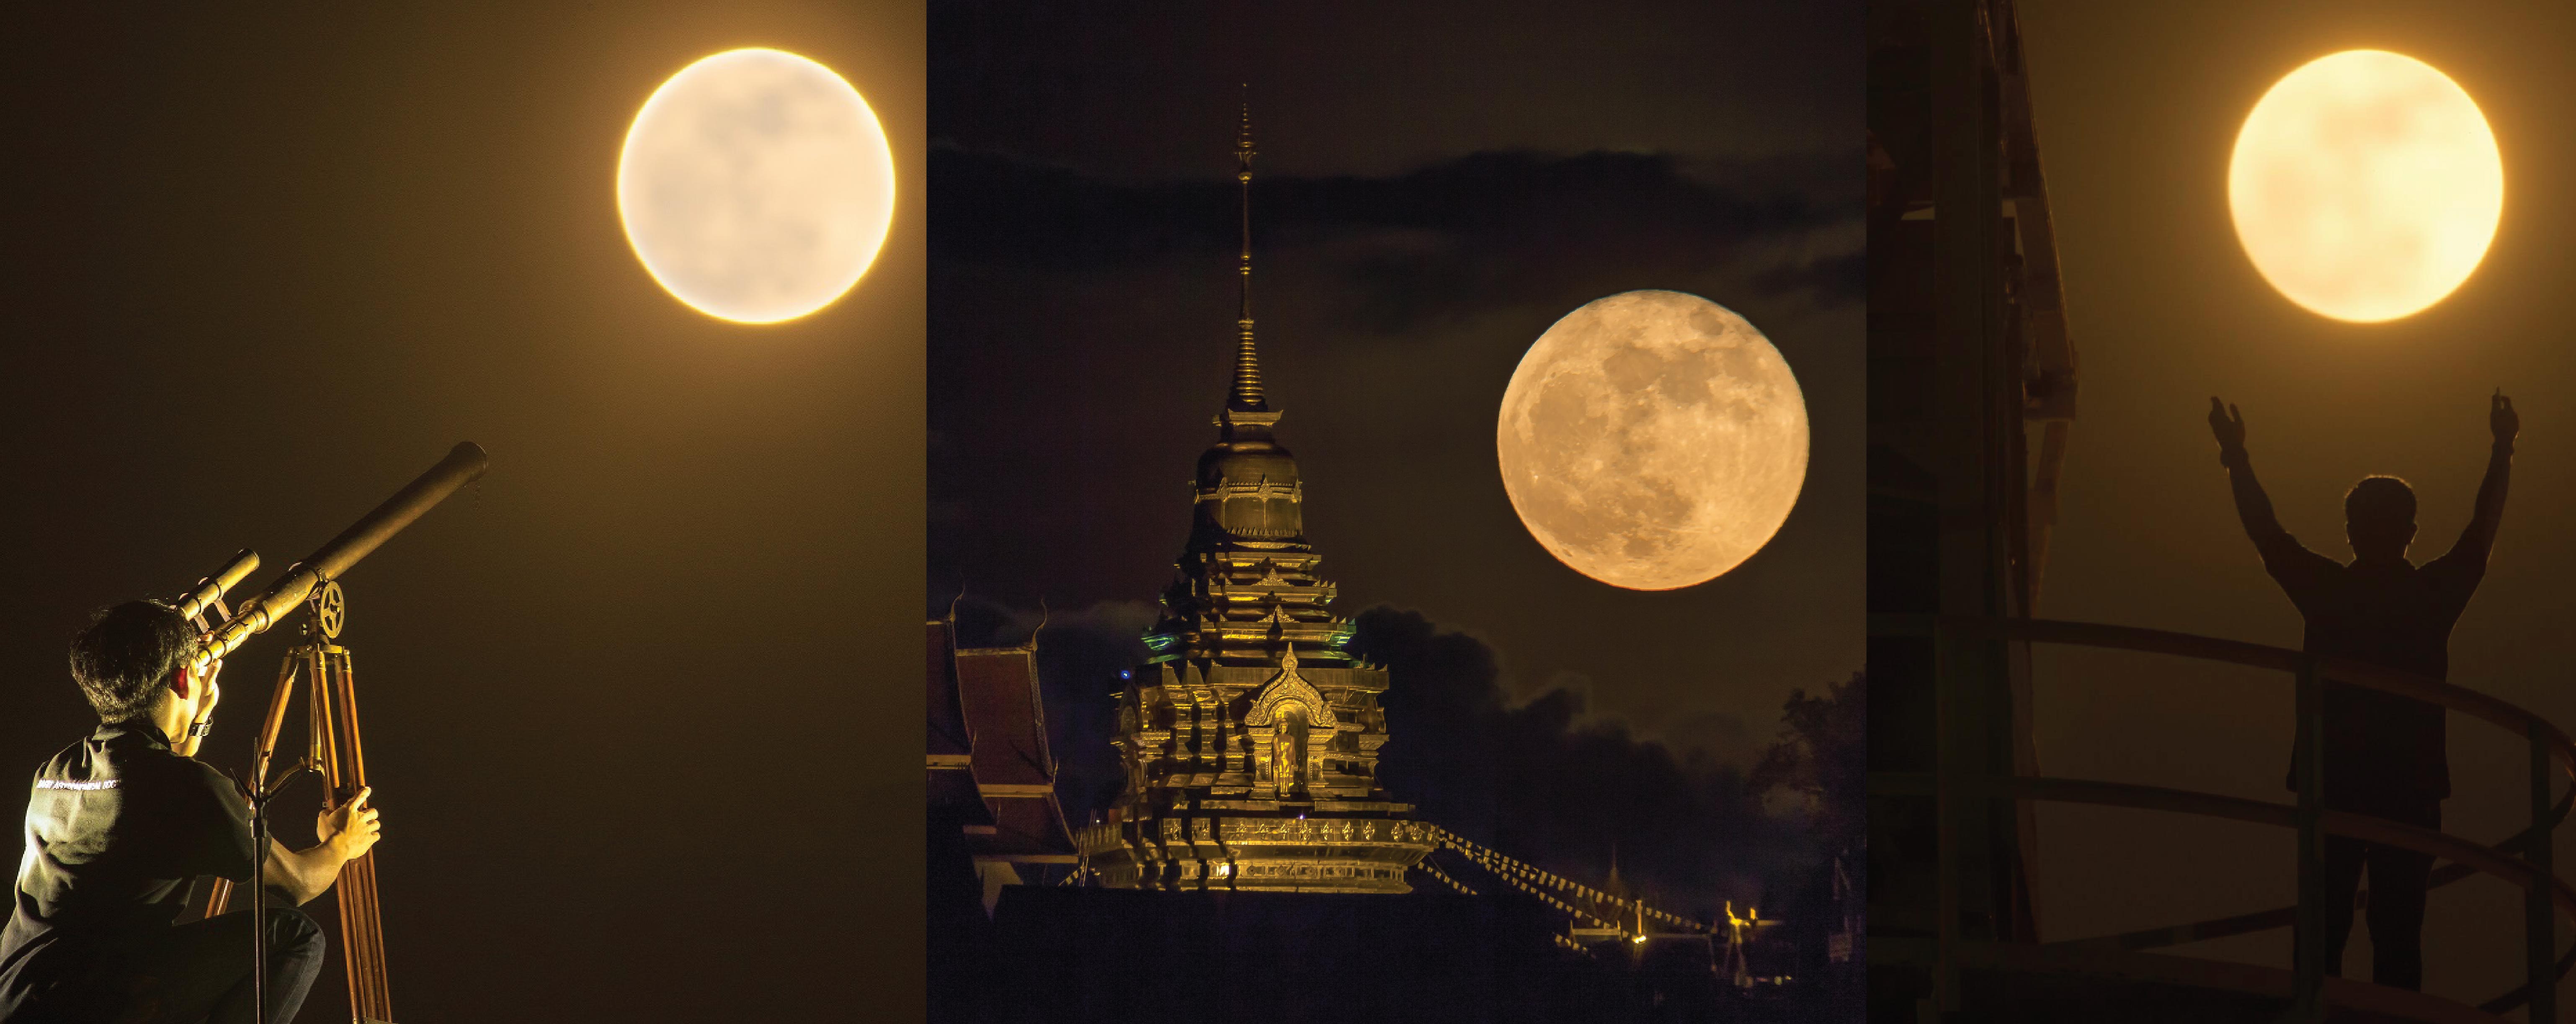 19 ก.พ. คืนมาฆบูชาชวนจับตา “ซูเปอร์ฟูลมูน” ดวงจันทร์เต็มดวงใกล้โลกที่สุดในรอบปี